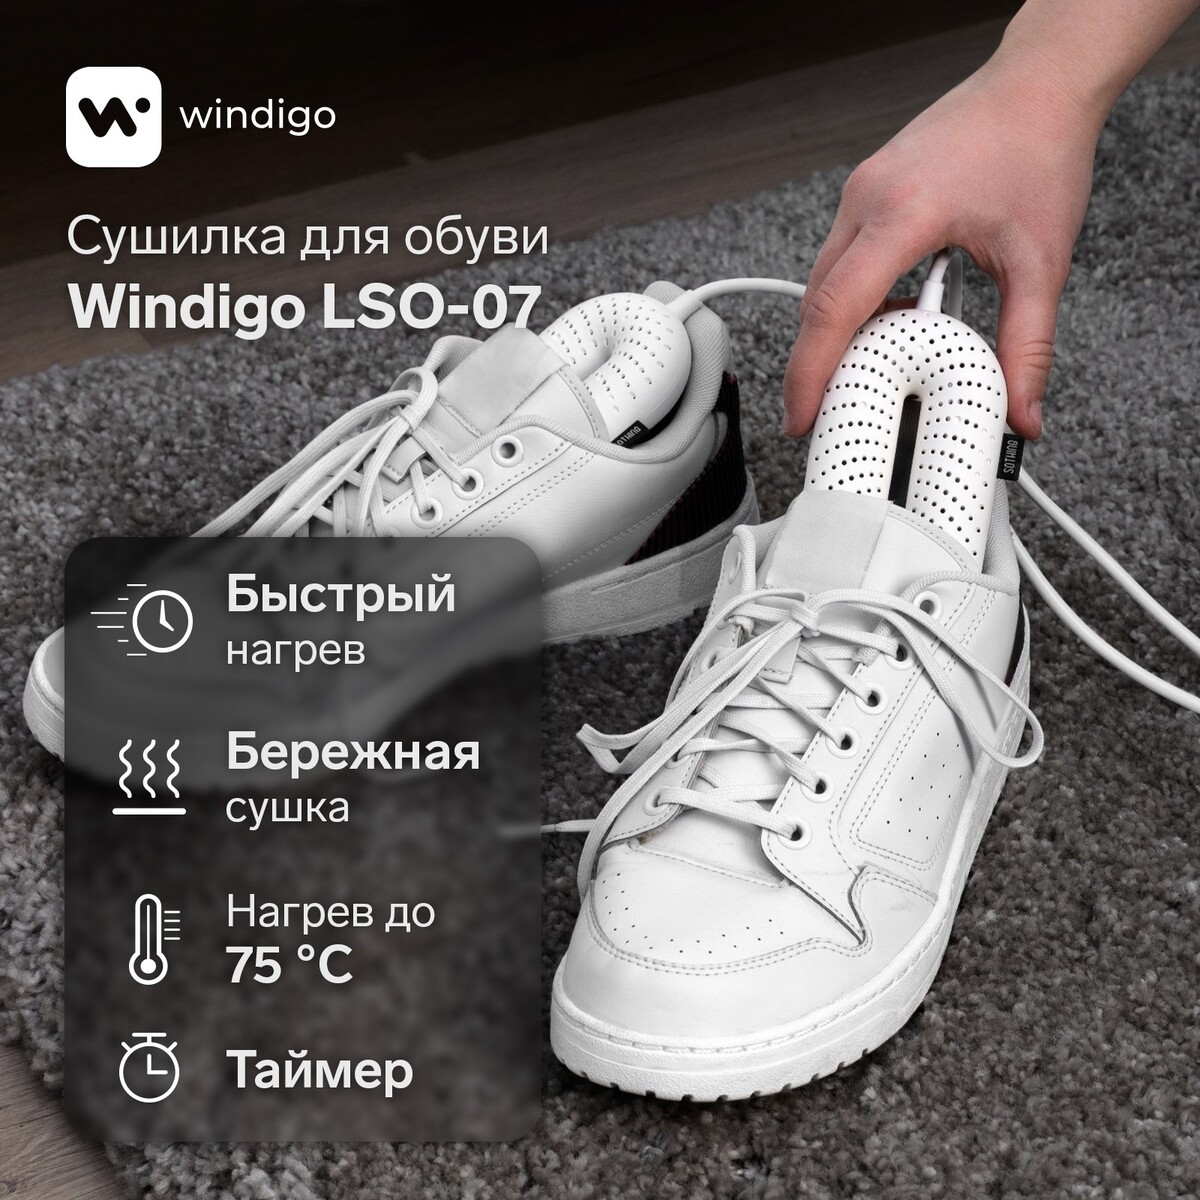 Сушилка для обуви windigo lso-07, 17 см, 20 вт, индикатор, таймер 3/6/9 часов, белая сушилка для обуви irit ir 3700 12 вт электрическая 220 в